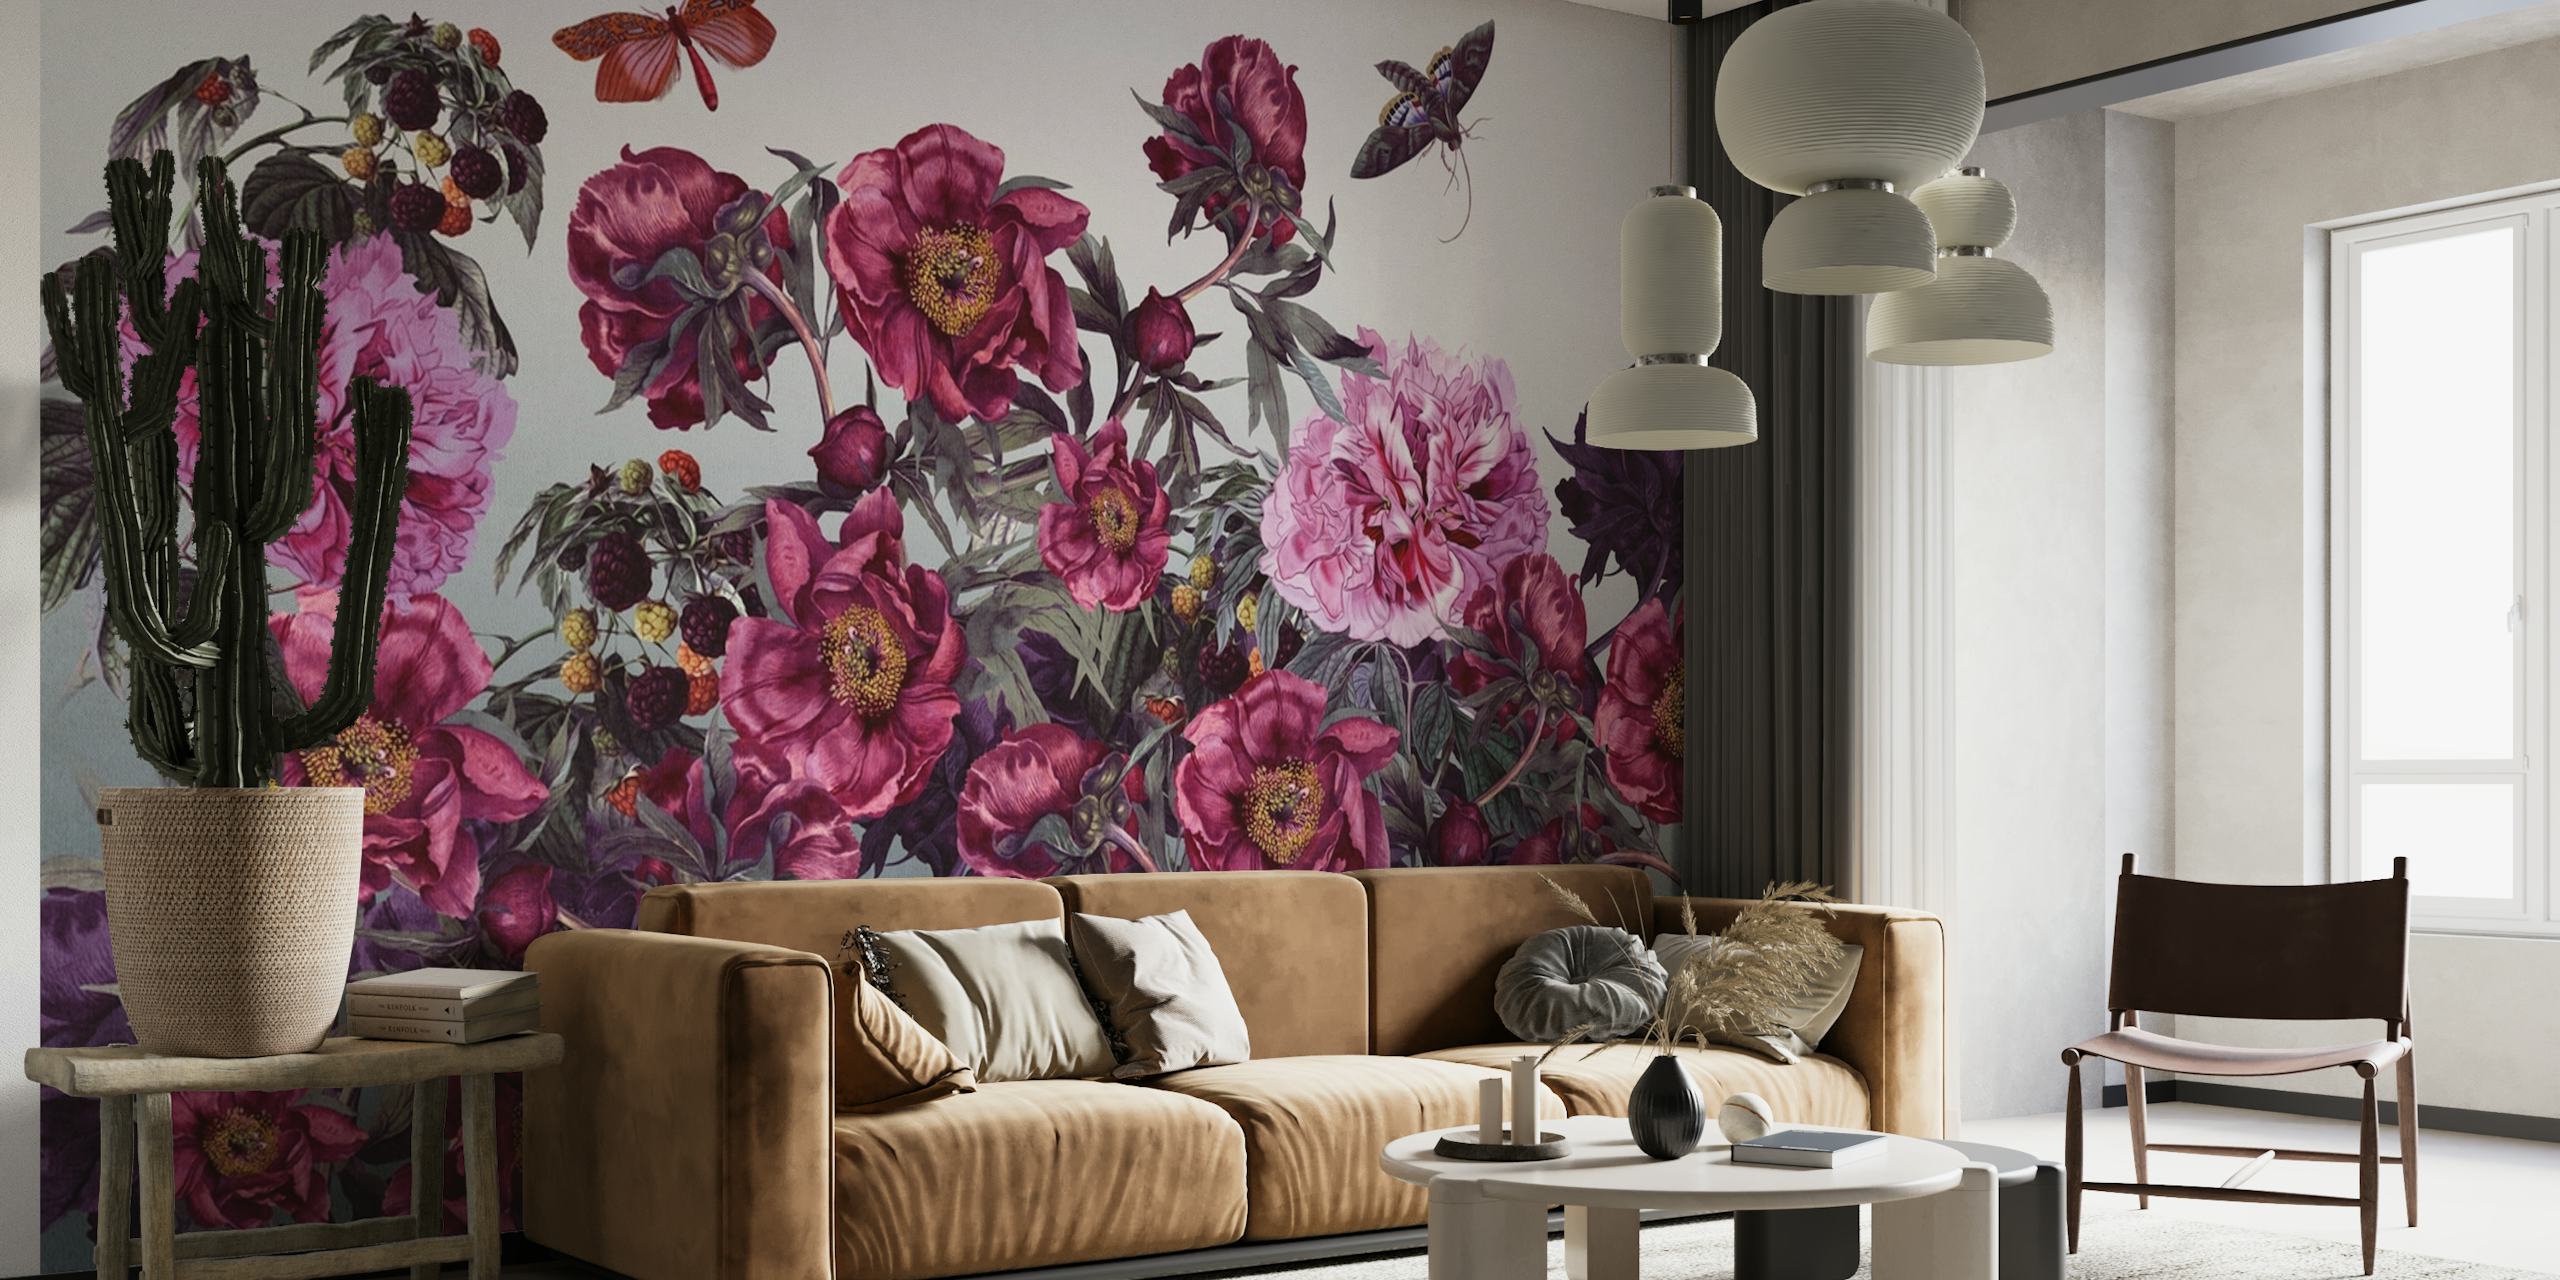 Vægmaleri med en række lyserøde og lilla pæonblomster, grønt løv og en sommerfugl.